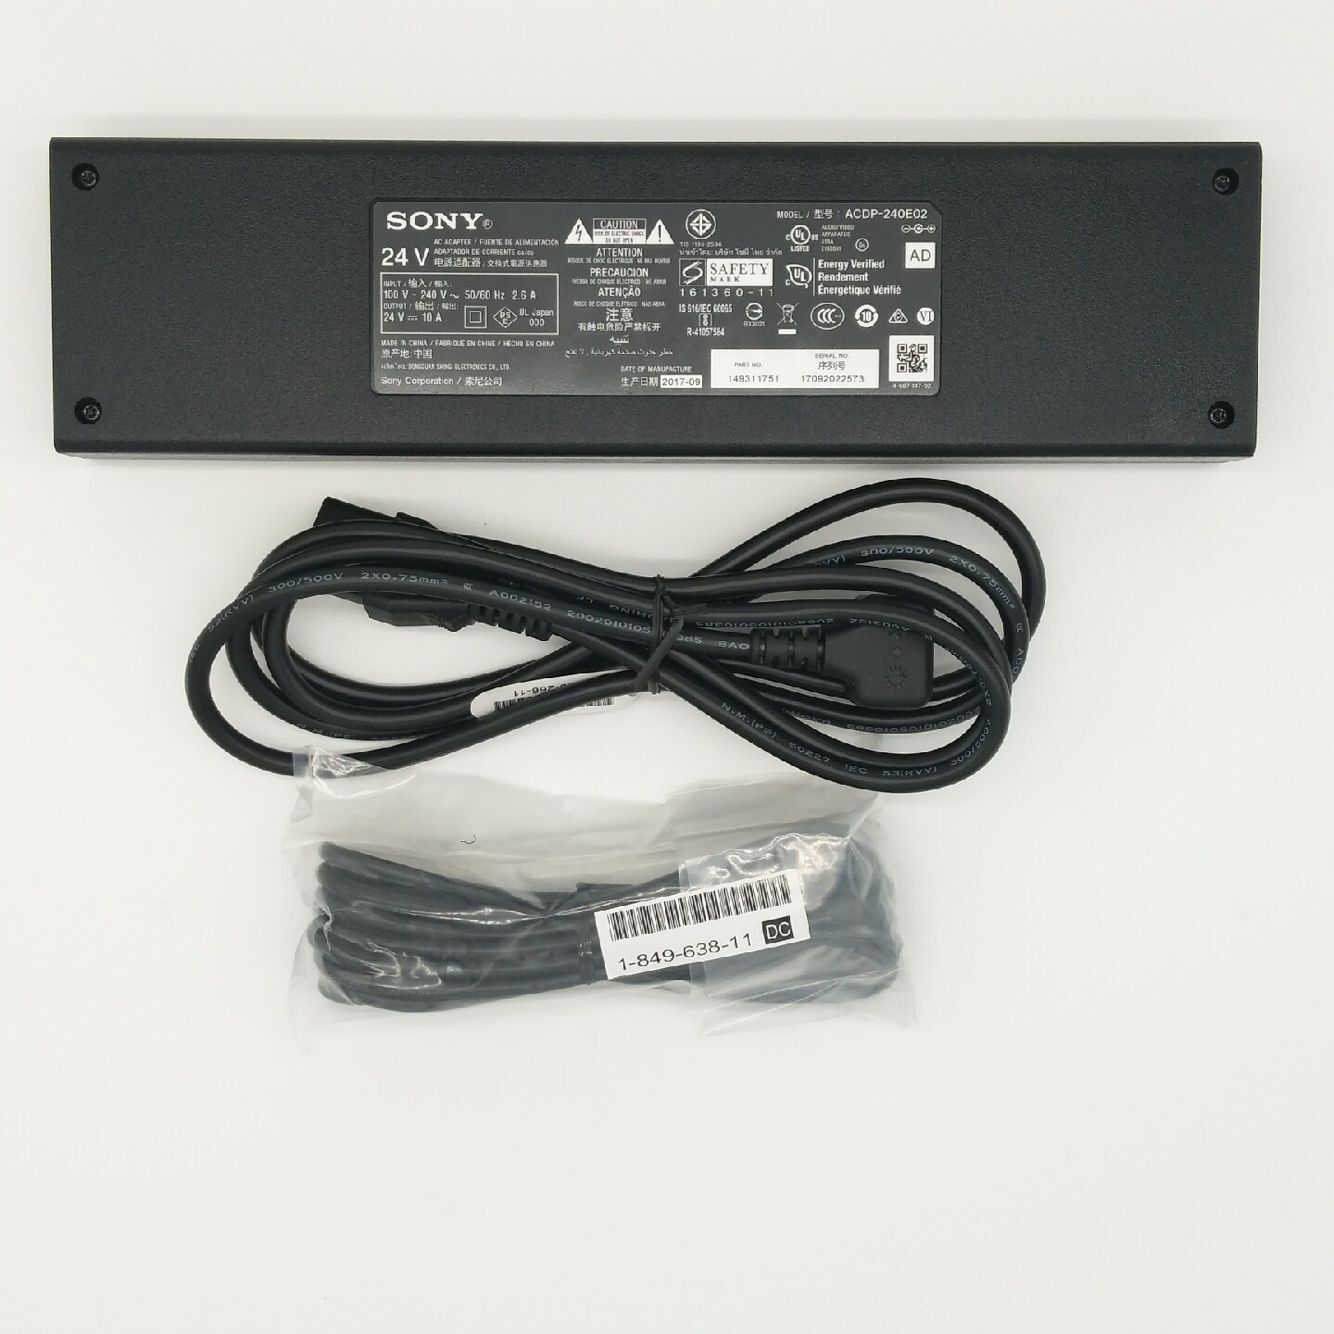 Original 240W Sony acdp-240e02 1-493-117-51 AC Adaptor